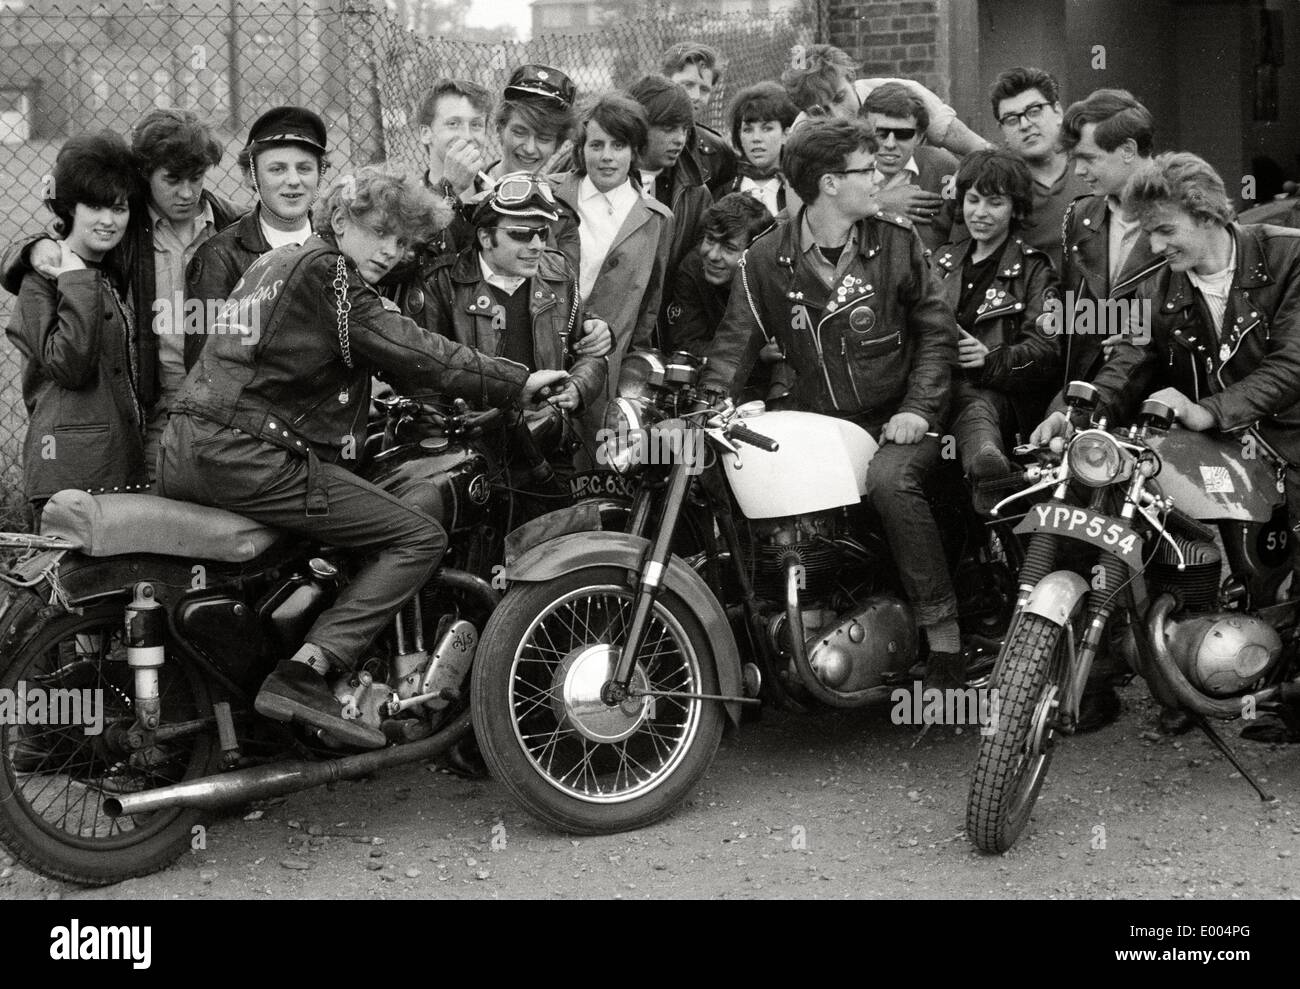 Motorradclub die Scorpions in den Vorstädten von London, 1964 Stockfoto